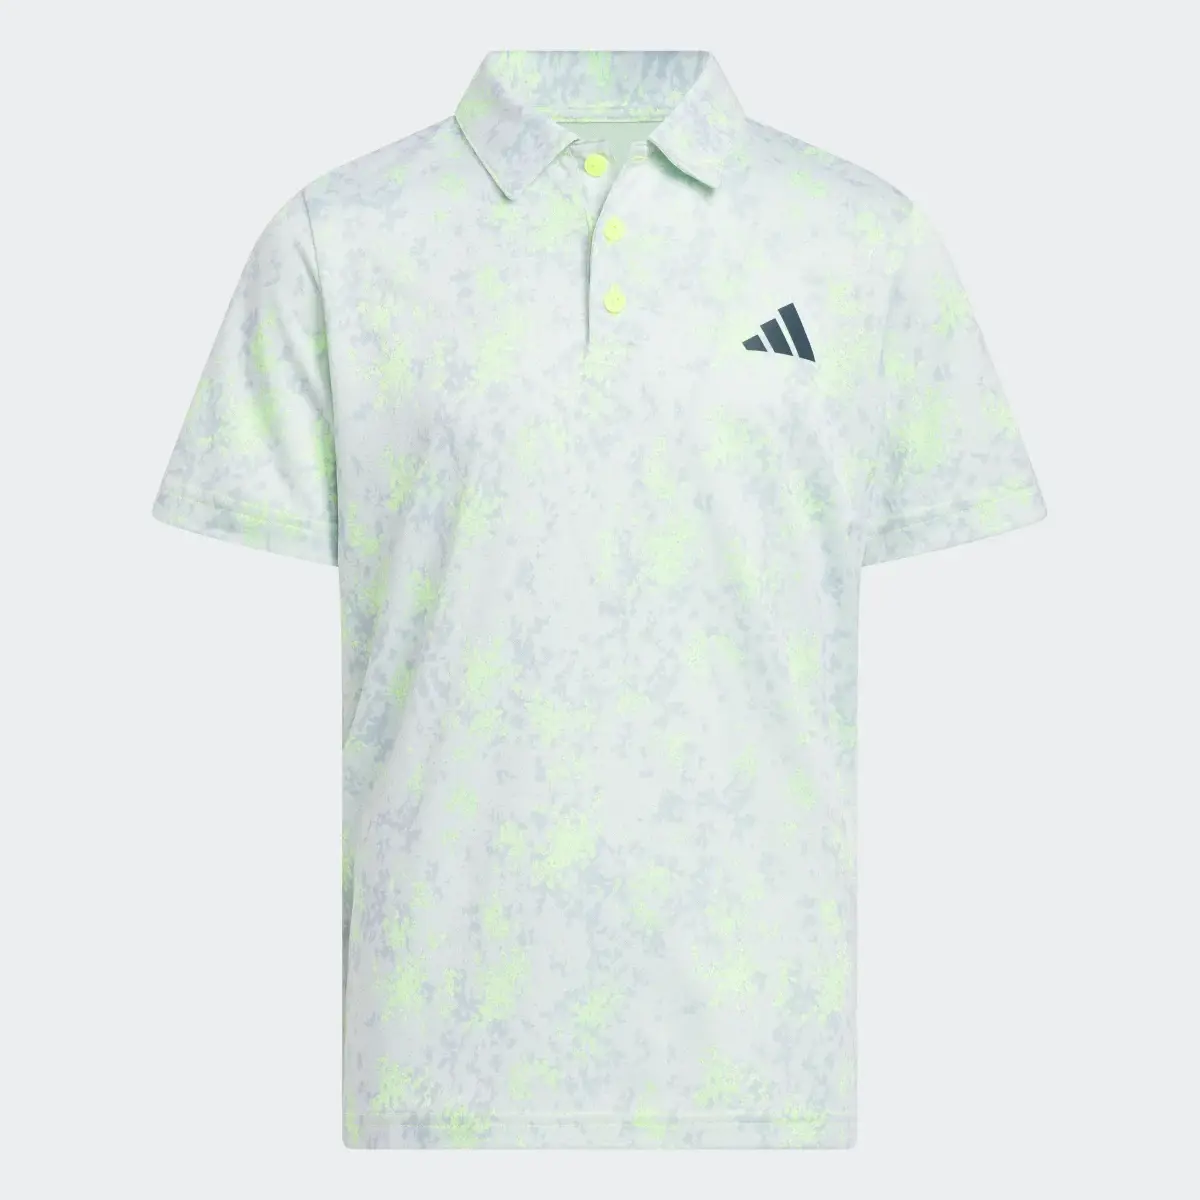 Adidas Ultimate Golf Polo Shirt. 1